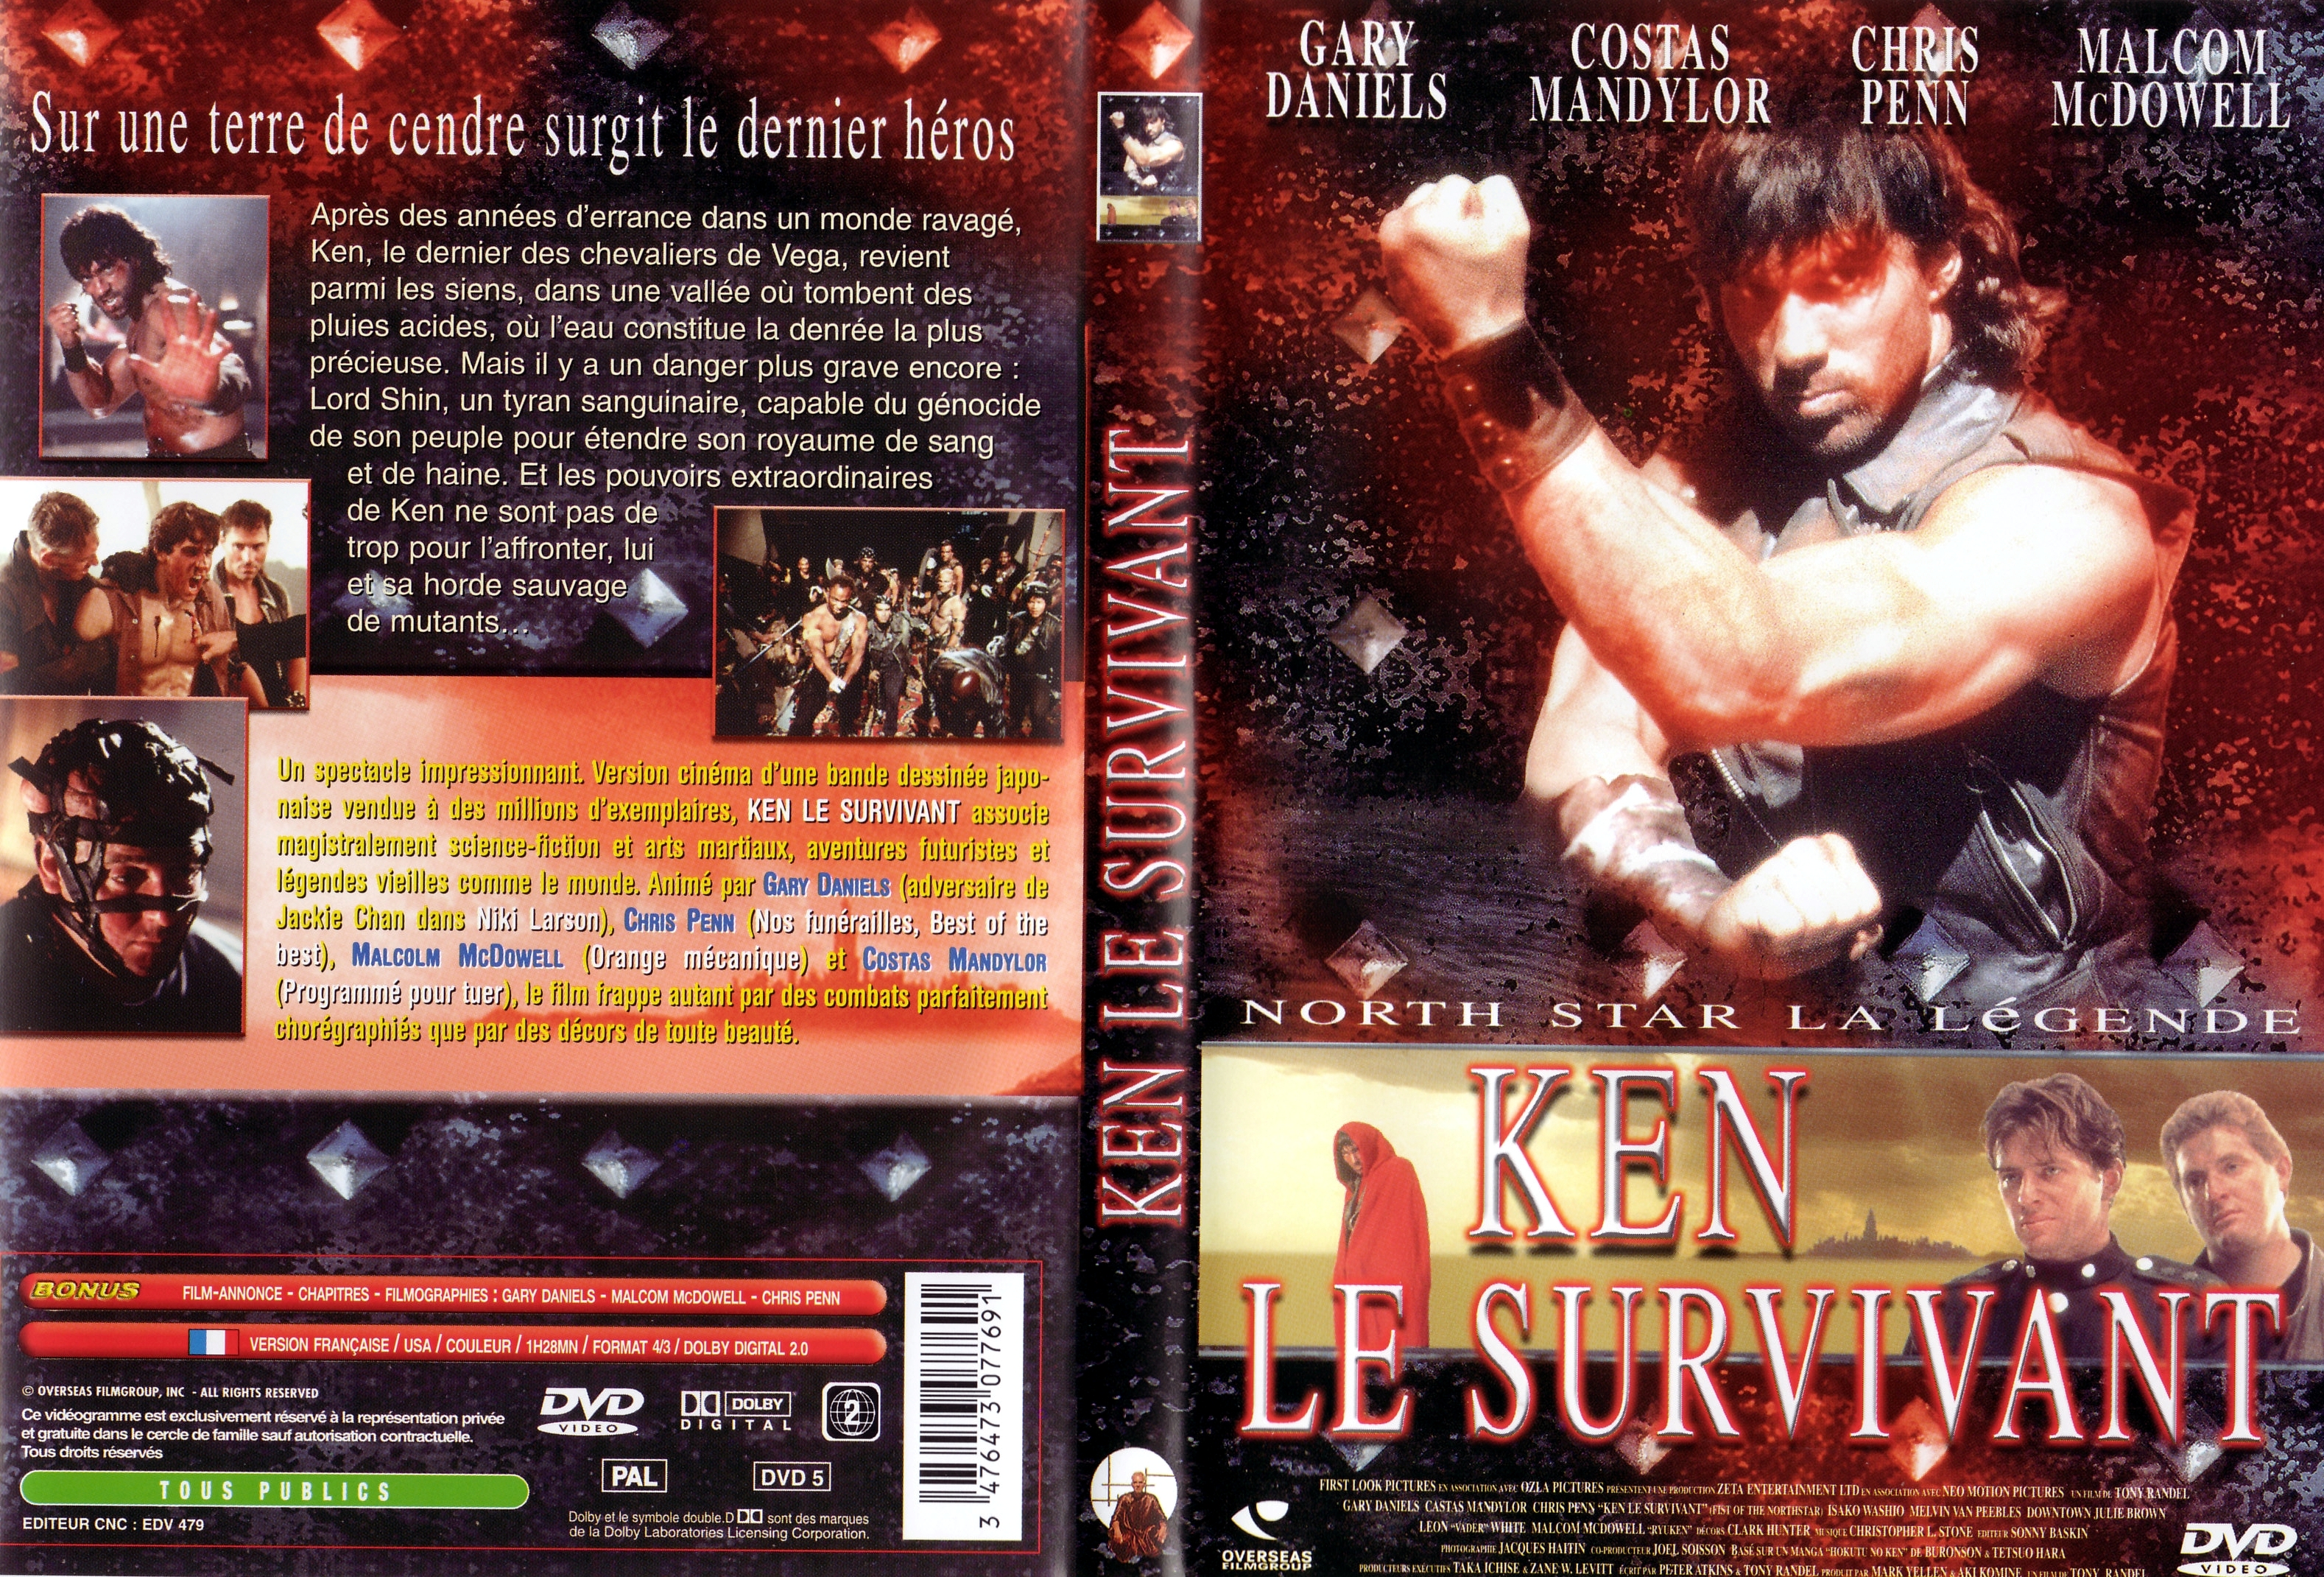 Jaquette DVD Ken le survivant le film